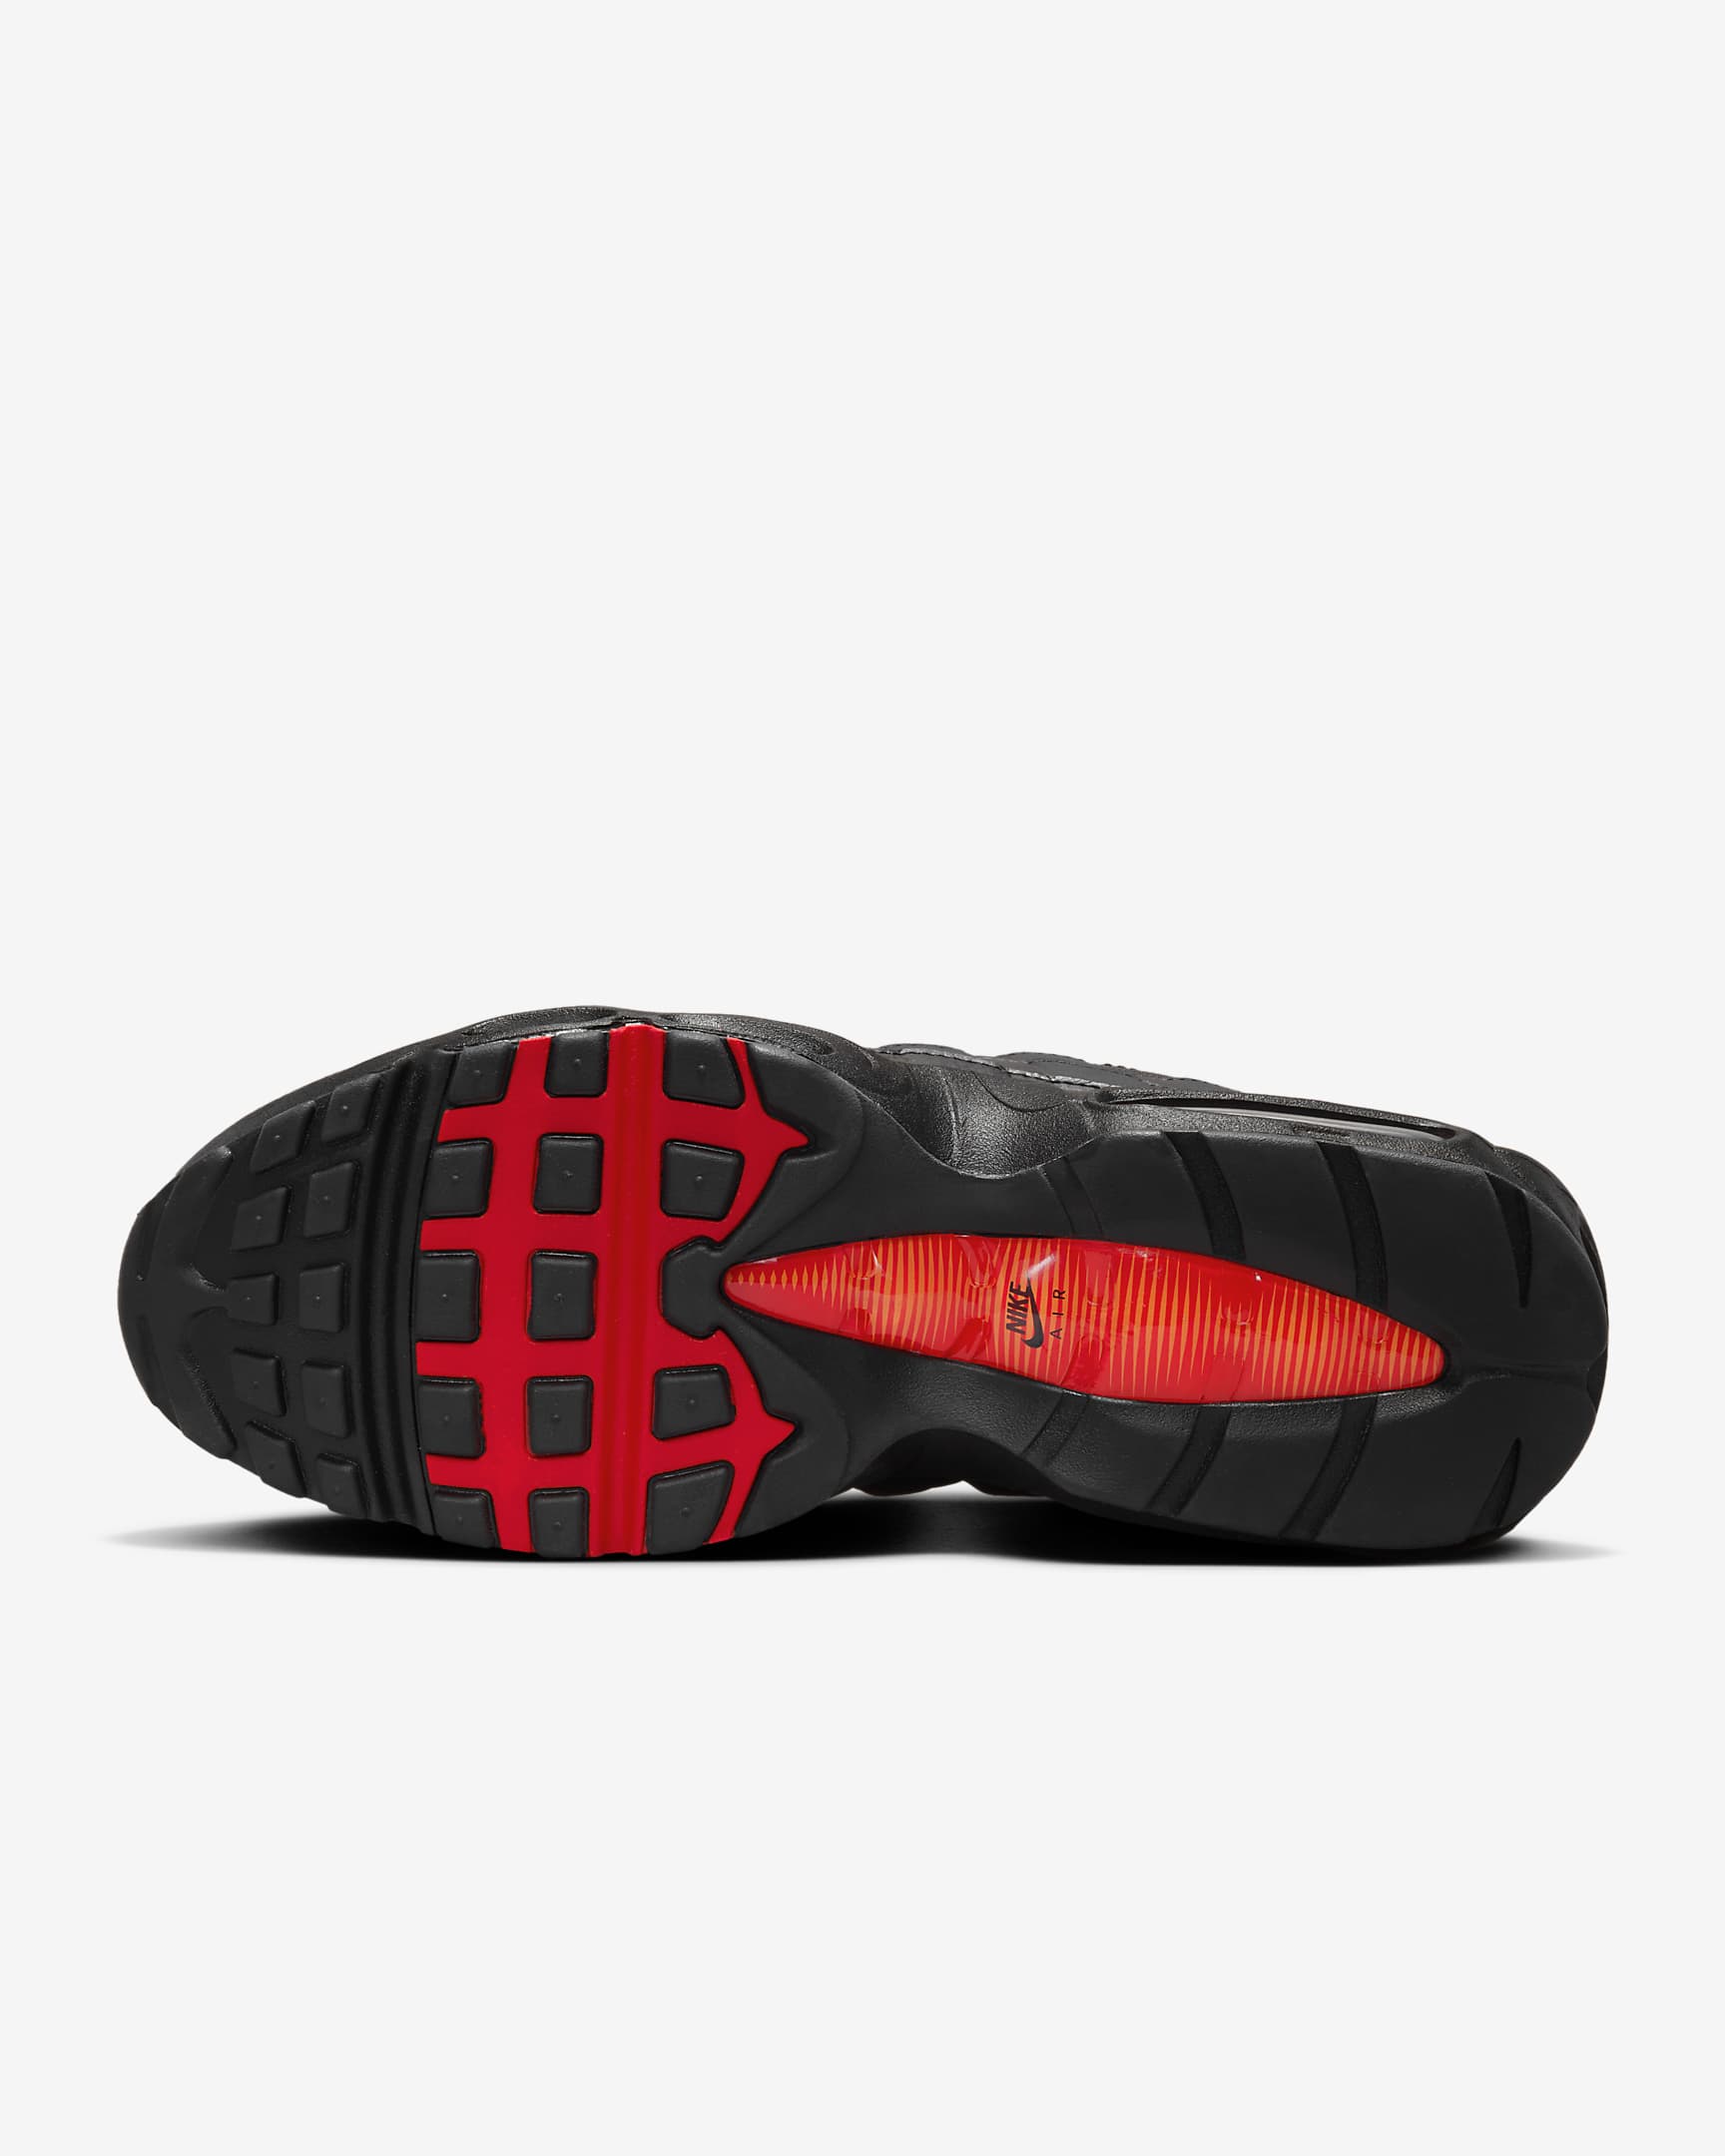 Sapatilhas Nike Air Max 95 para homem - Preto/Laranja Safety/Vermelho University